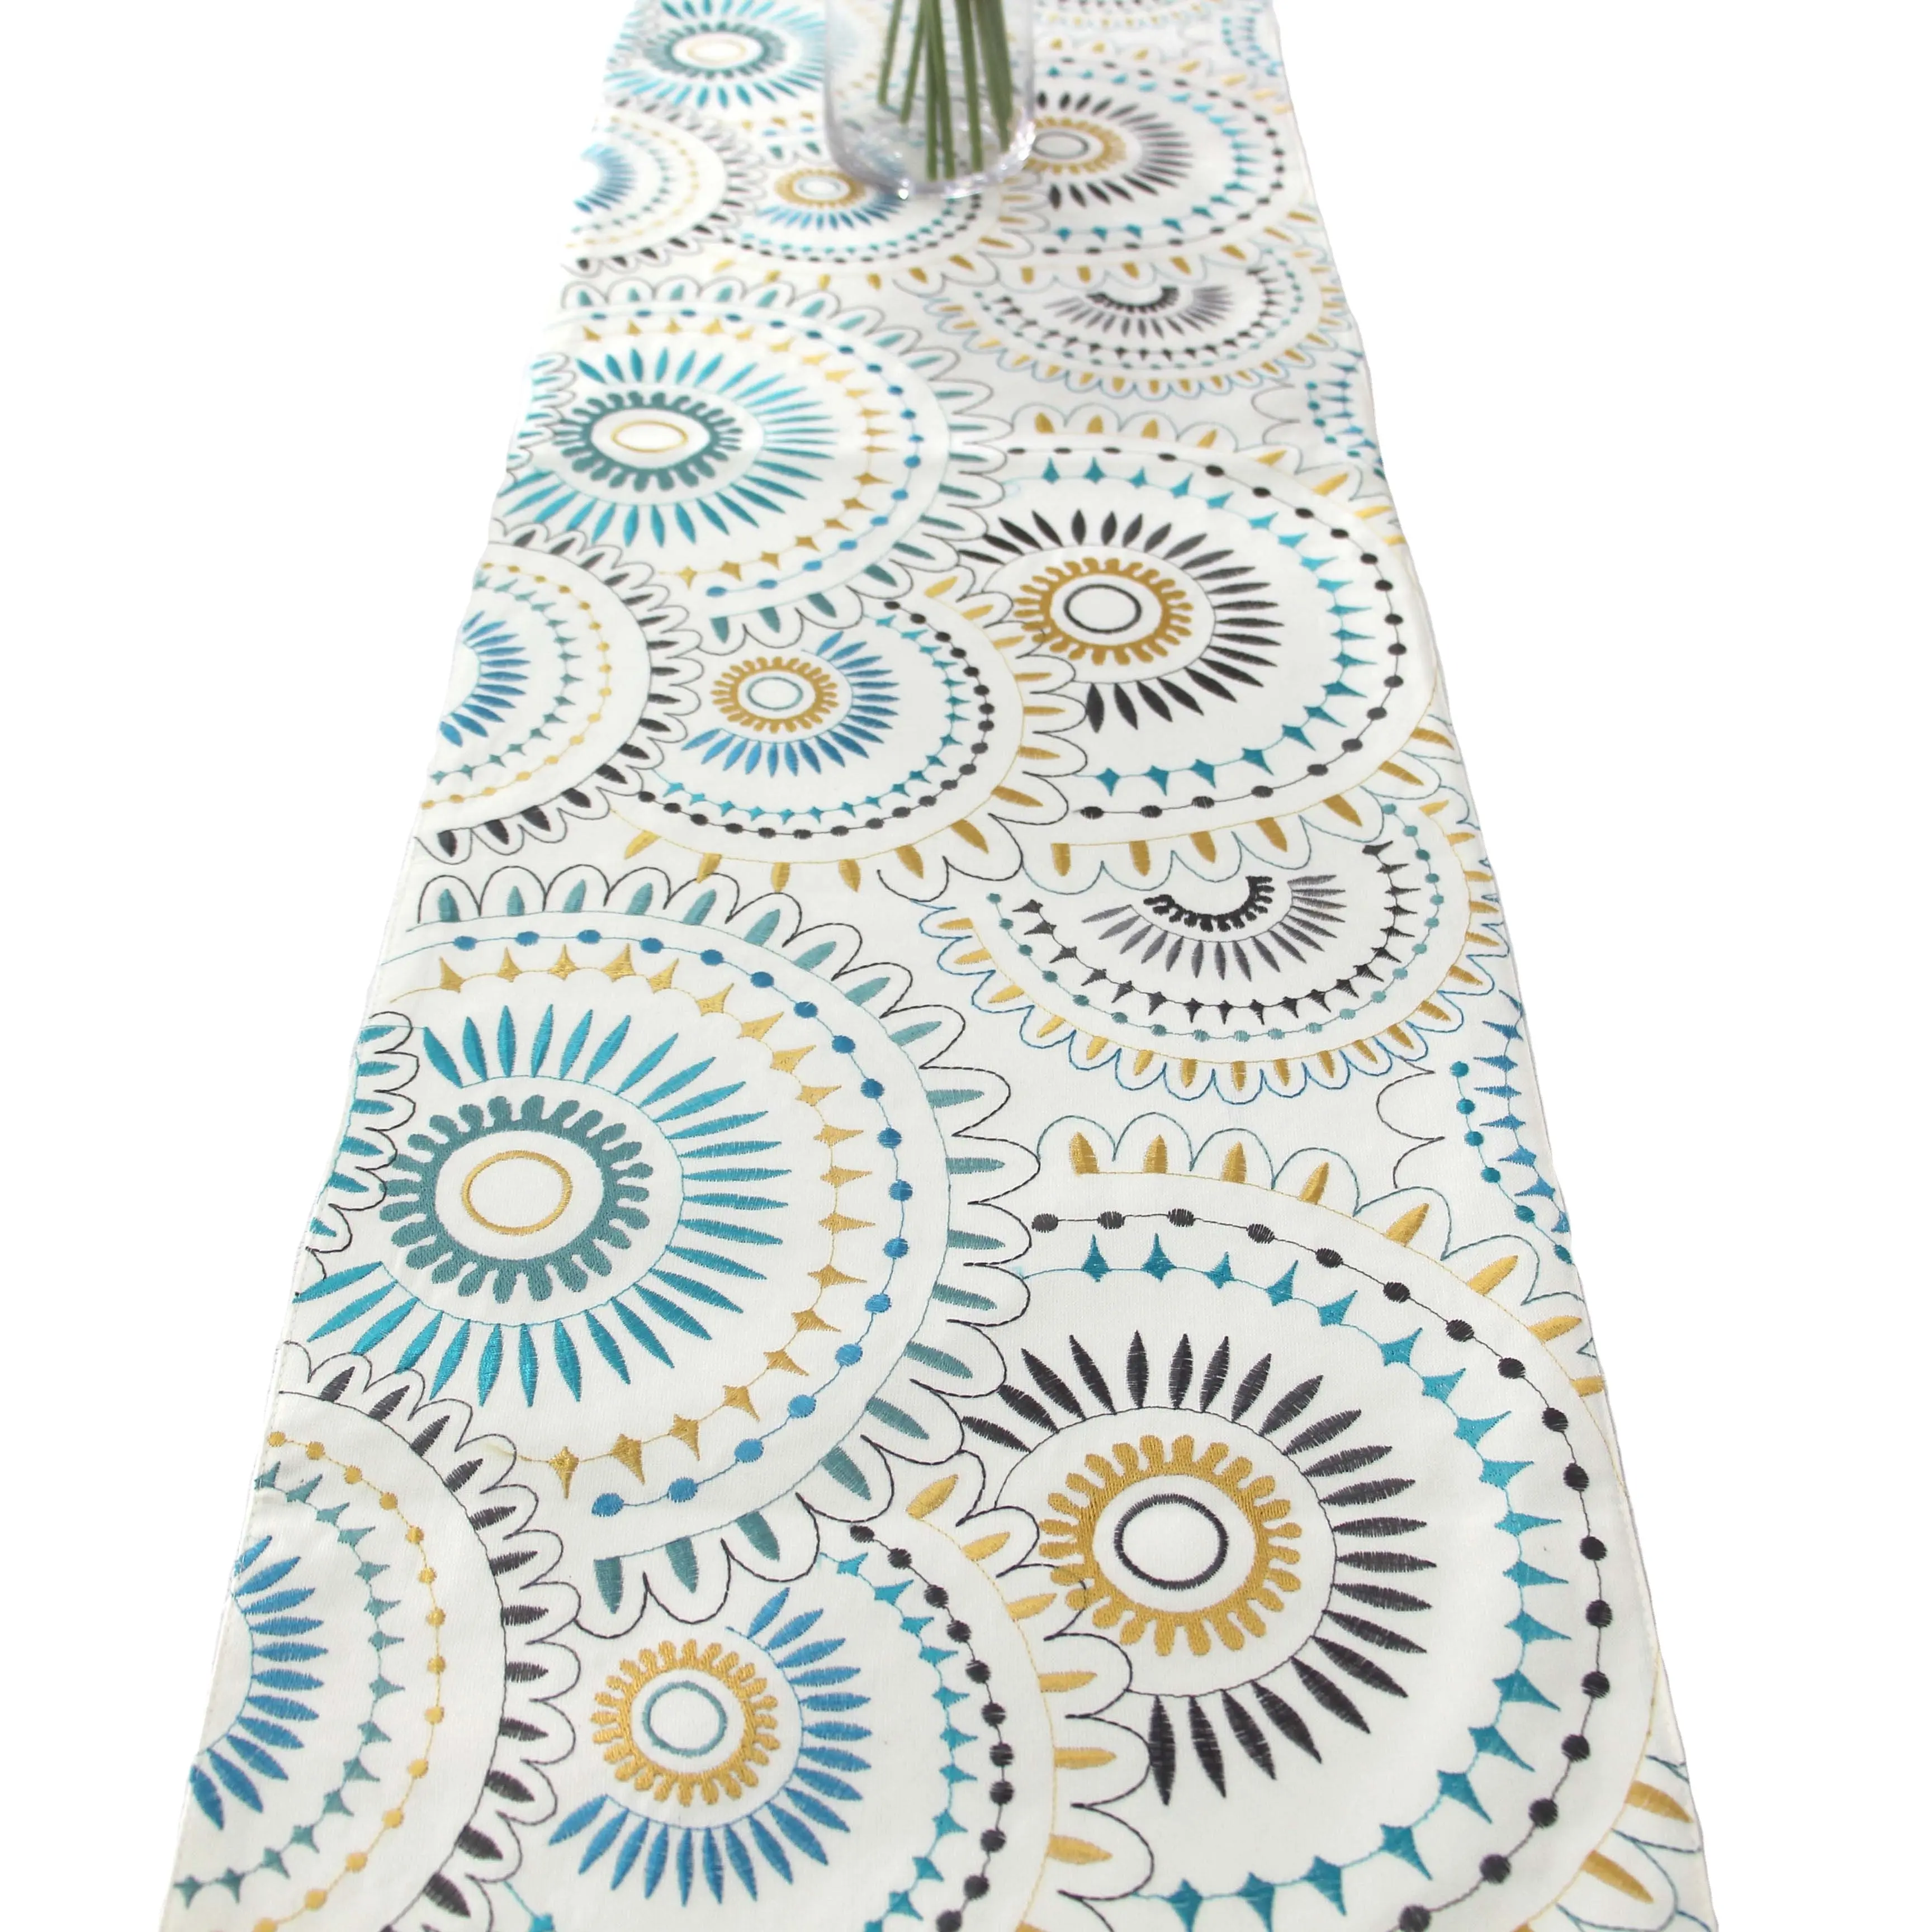 Hinese Factory makes-camino de mesa de algodón puro con nuevo patrón bordado, lujoso ambiente